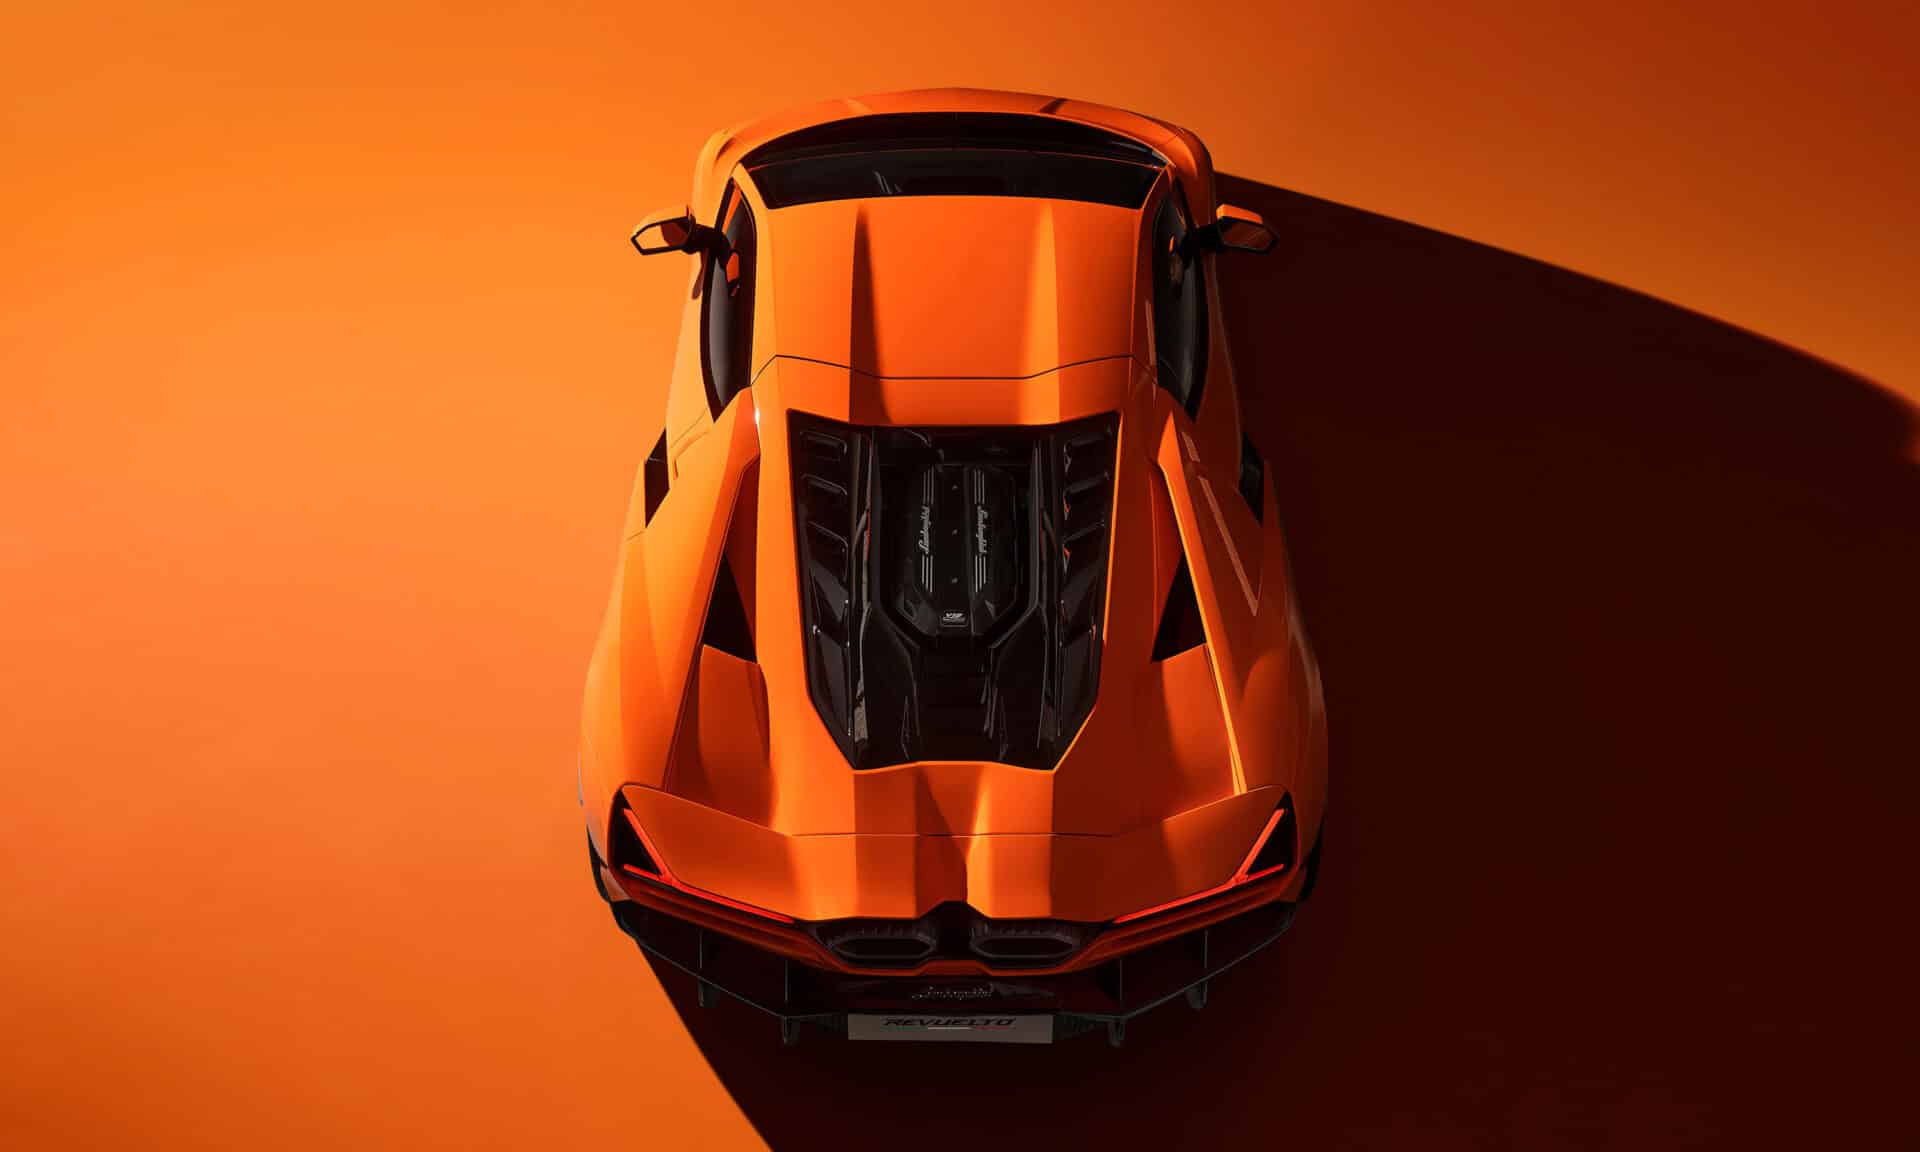 Lamborghini Revuelto plug-in ibrida 2023